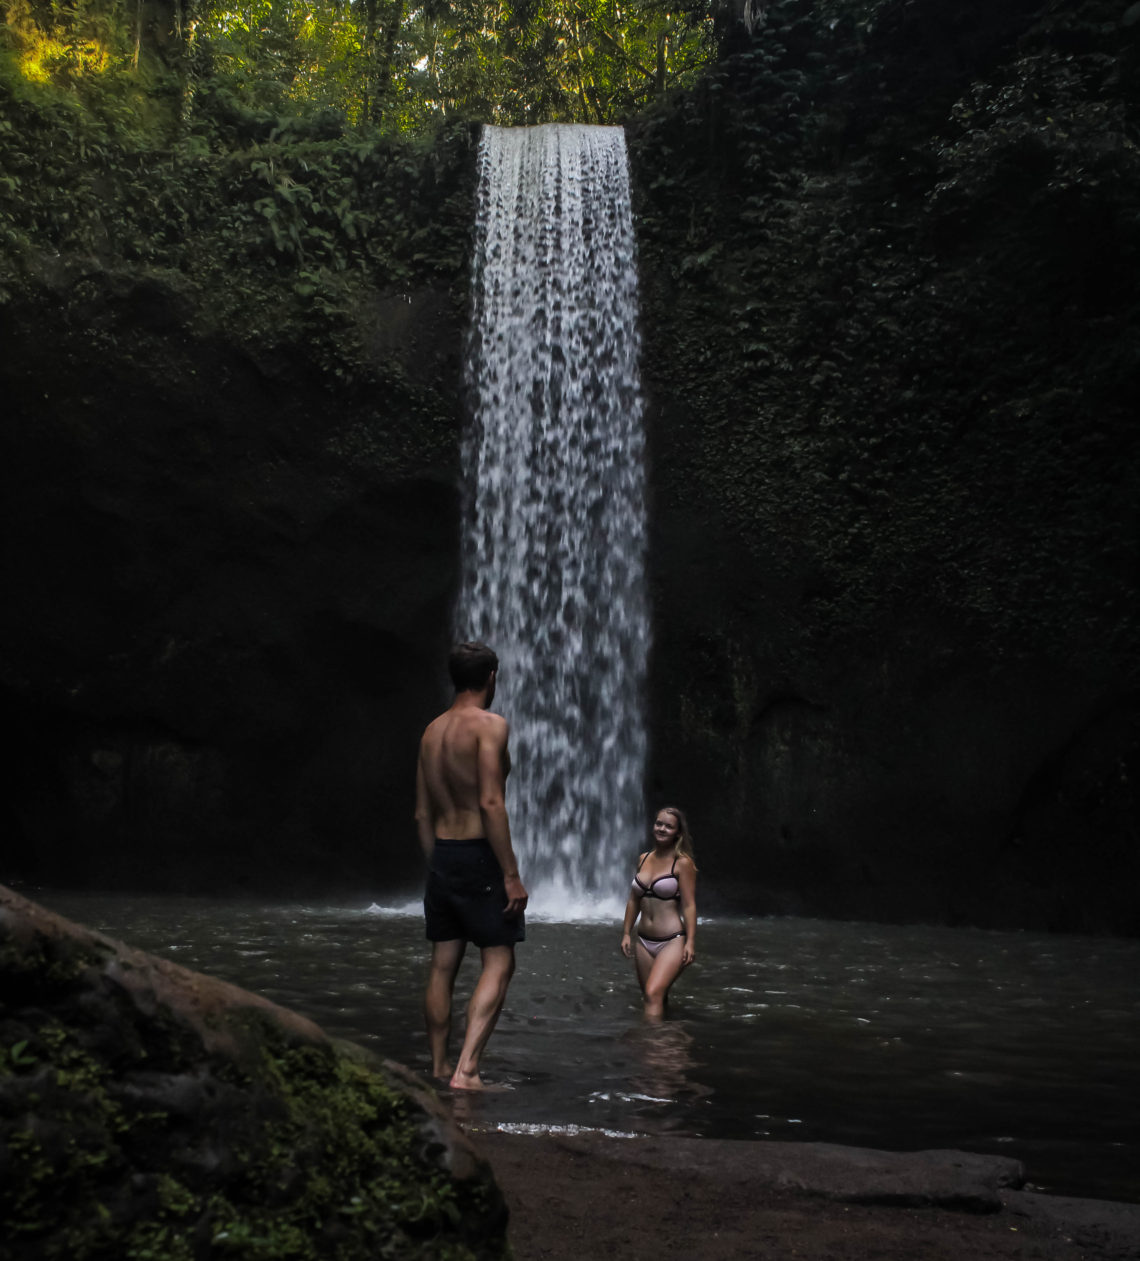 tibumana waterfall